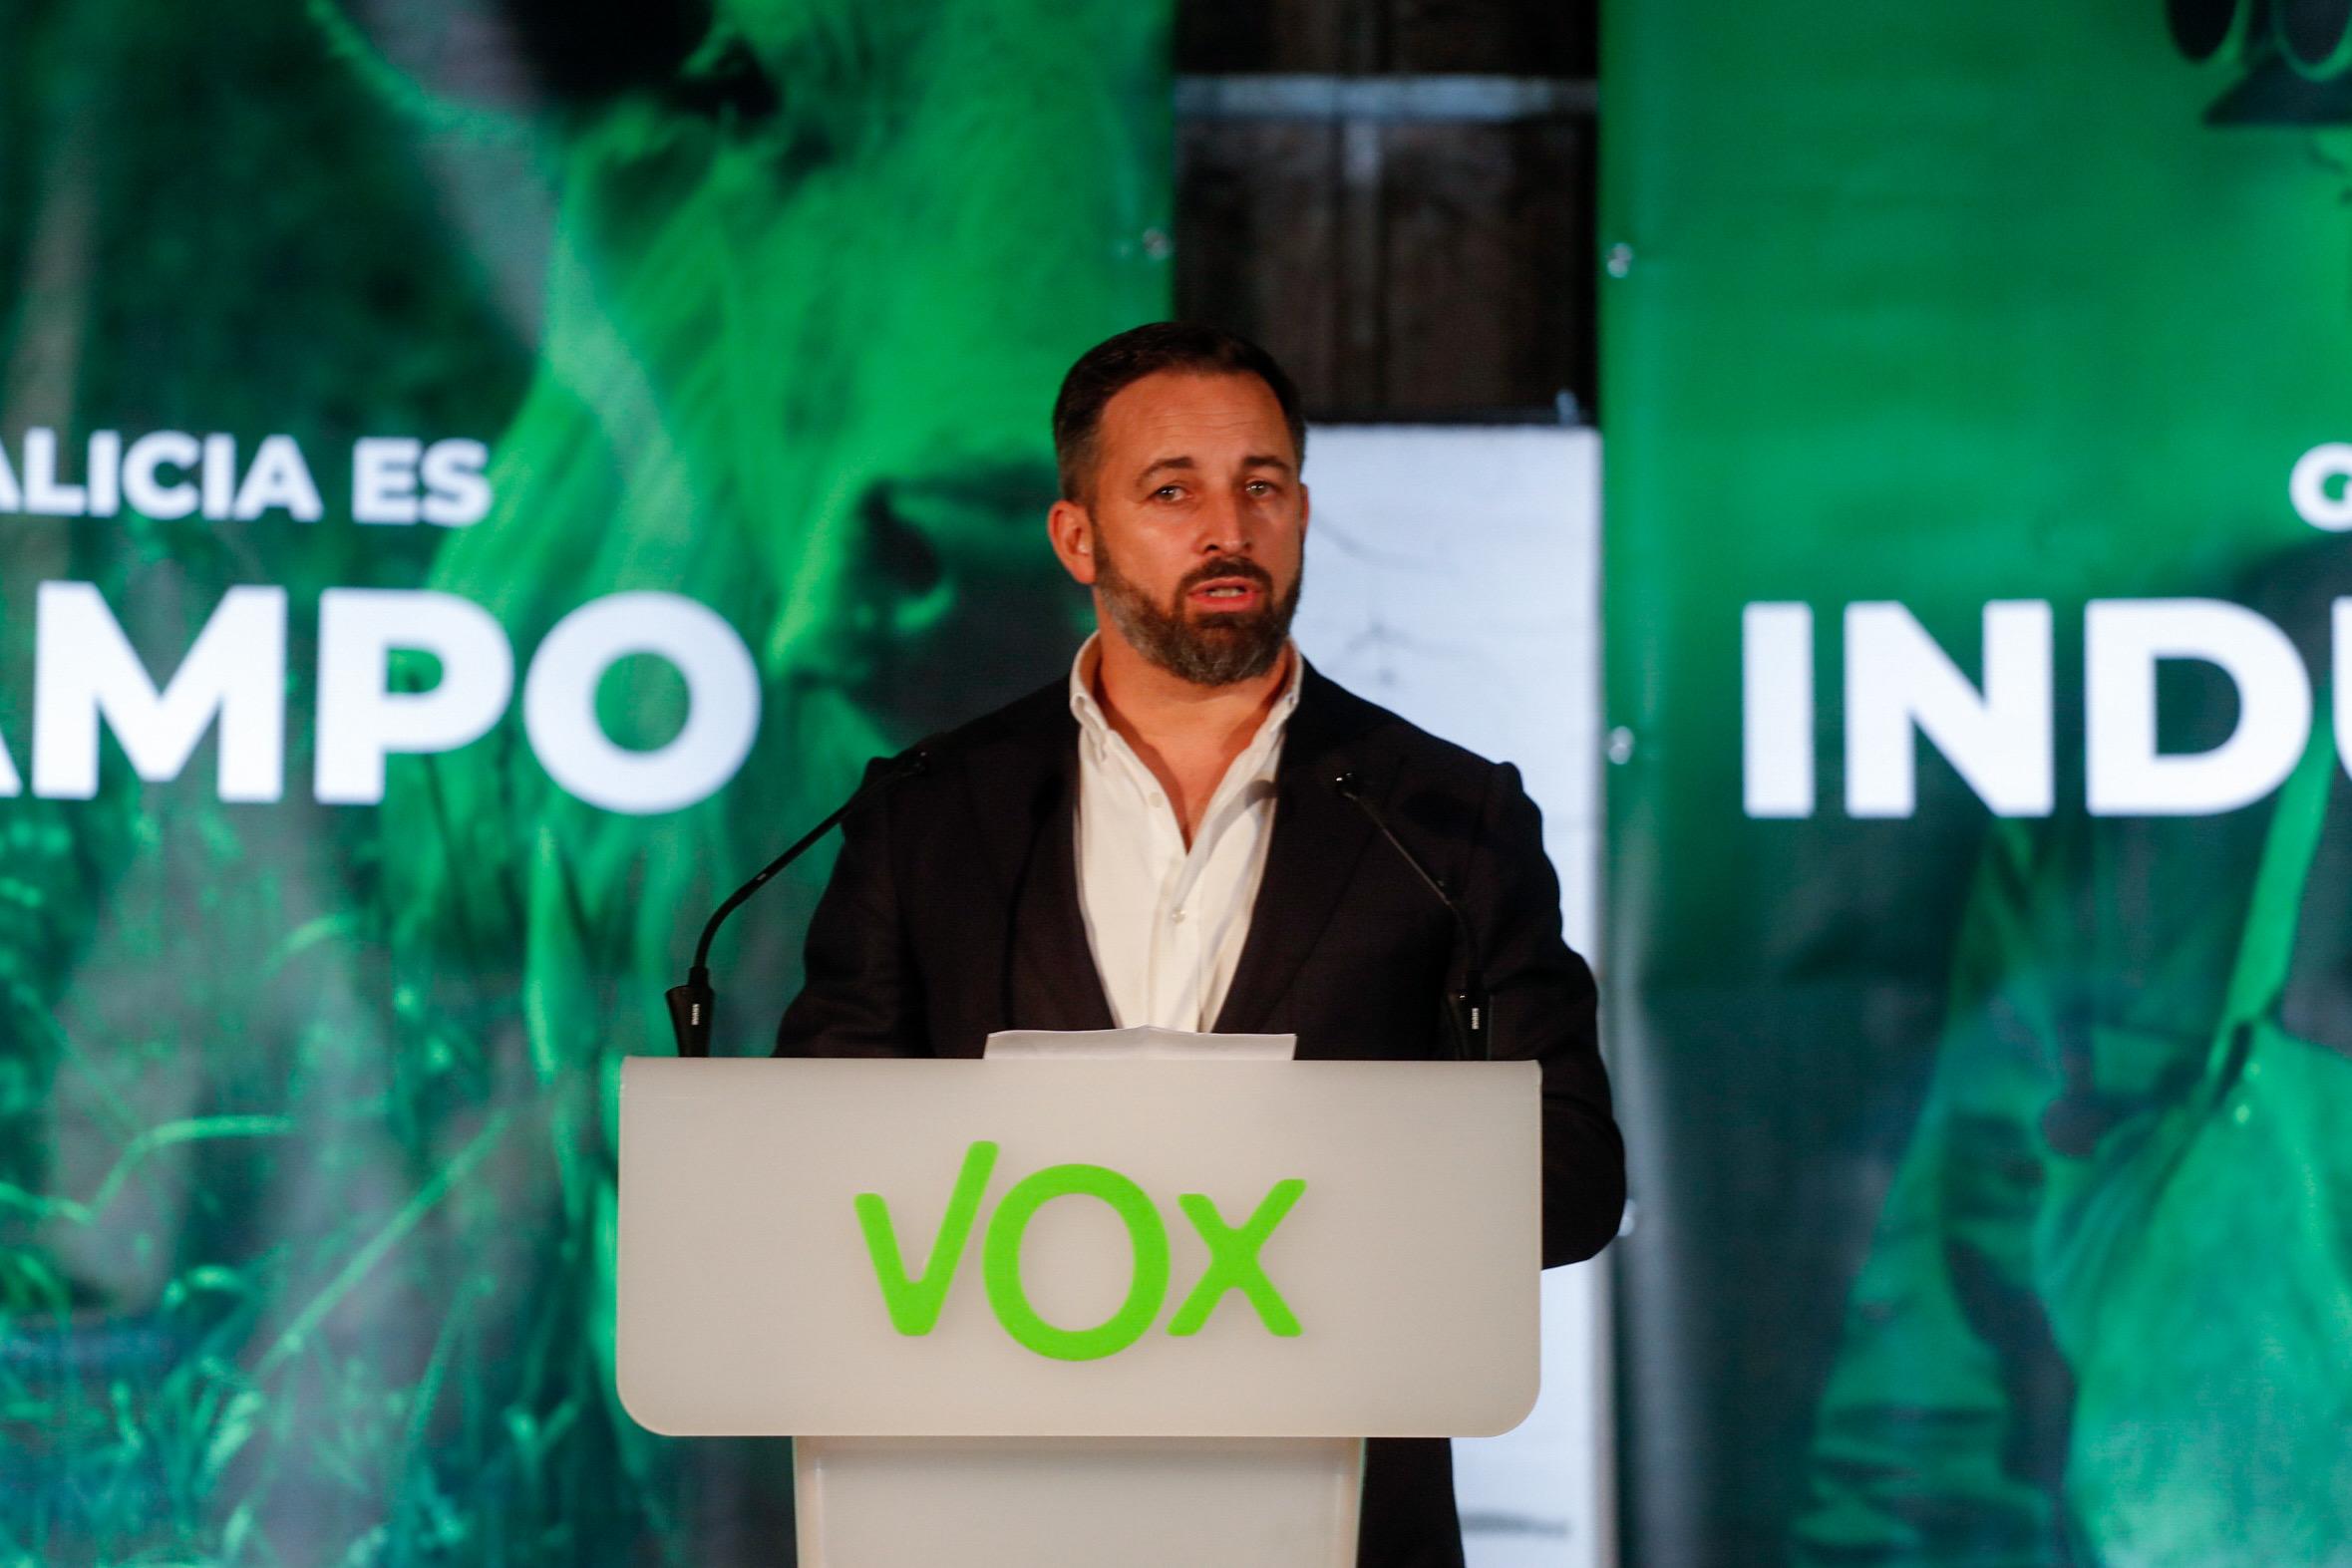 El presidente de Vox, Santiago Abascal, durante su intervención en la presentación de las candidaturas de VOX para las Elecciones al Parlamento de Galicia de 2020, en Mos, Pontevedra